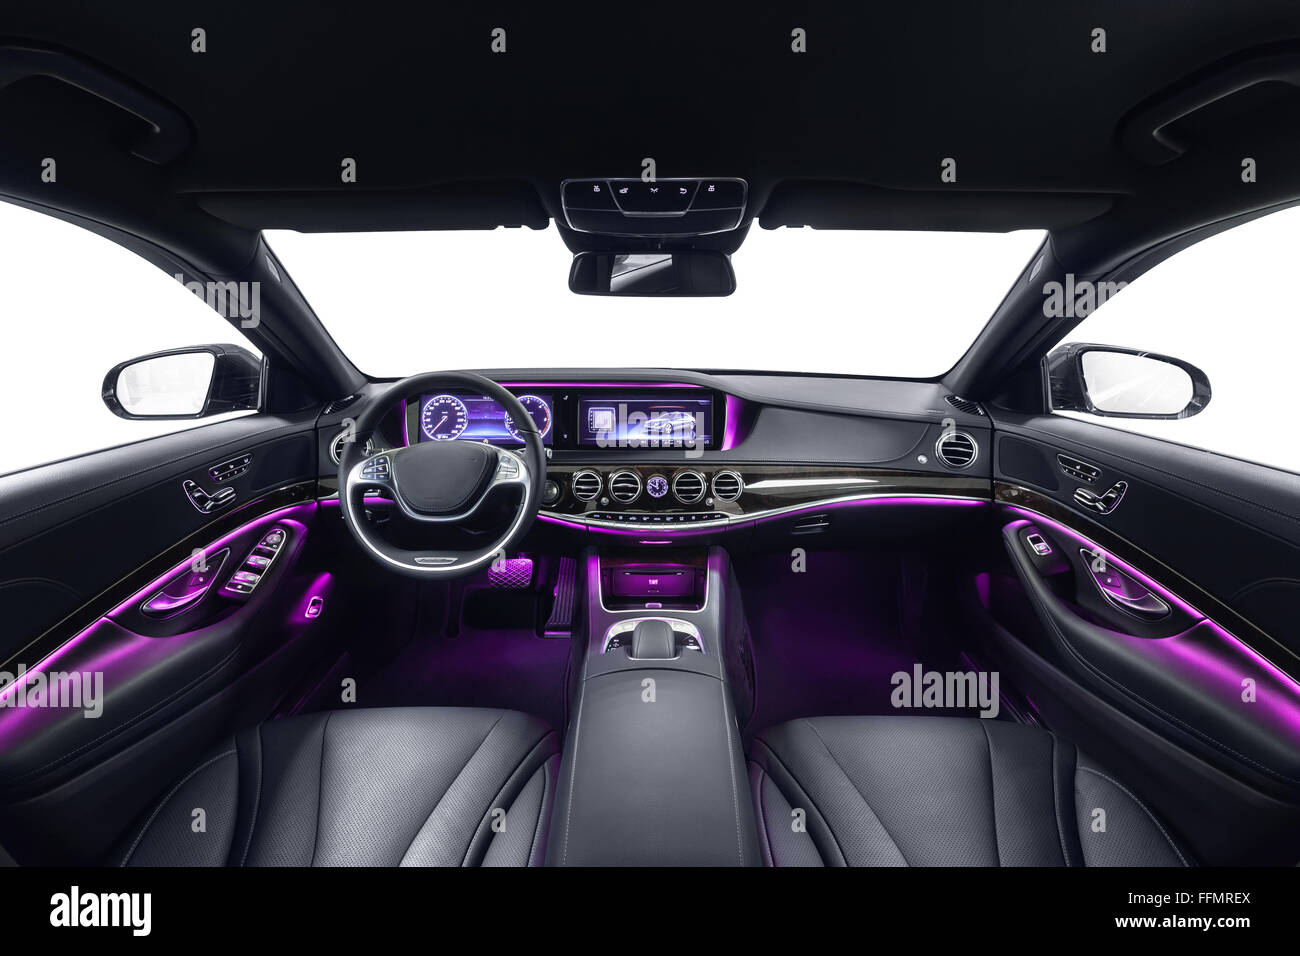 Iluminar y modernizar el interior de coche es así de sencillo